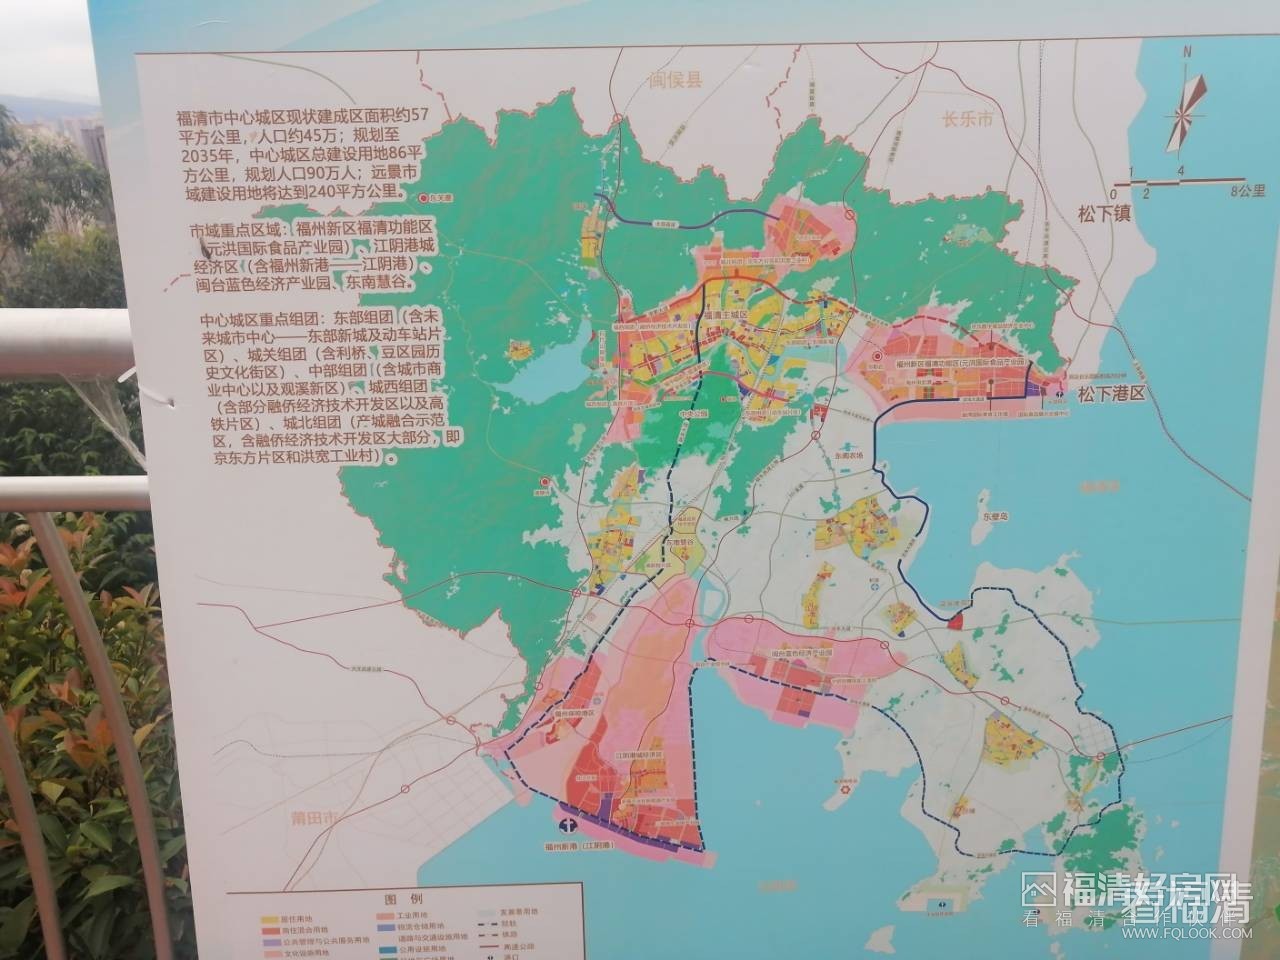 福清东部新城道路规划图片